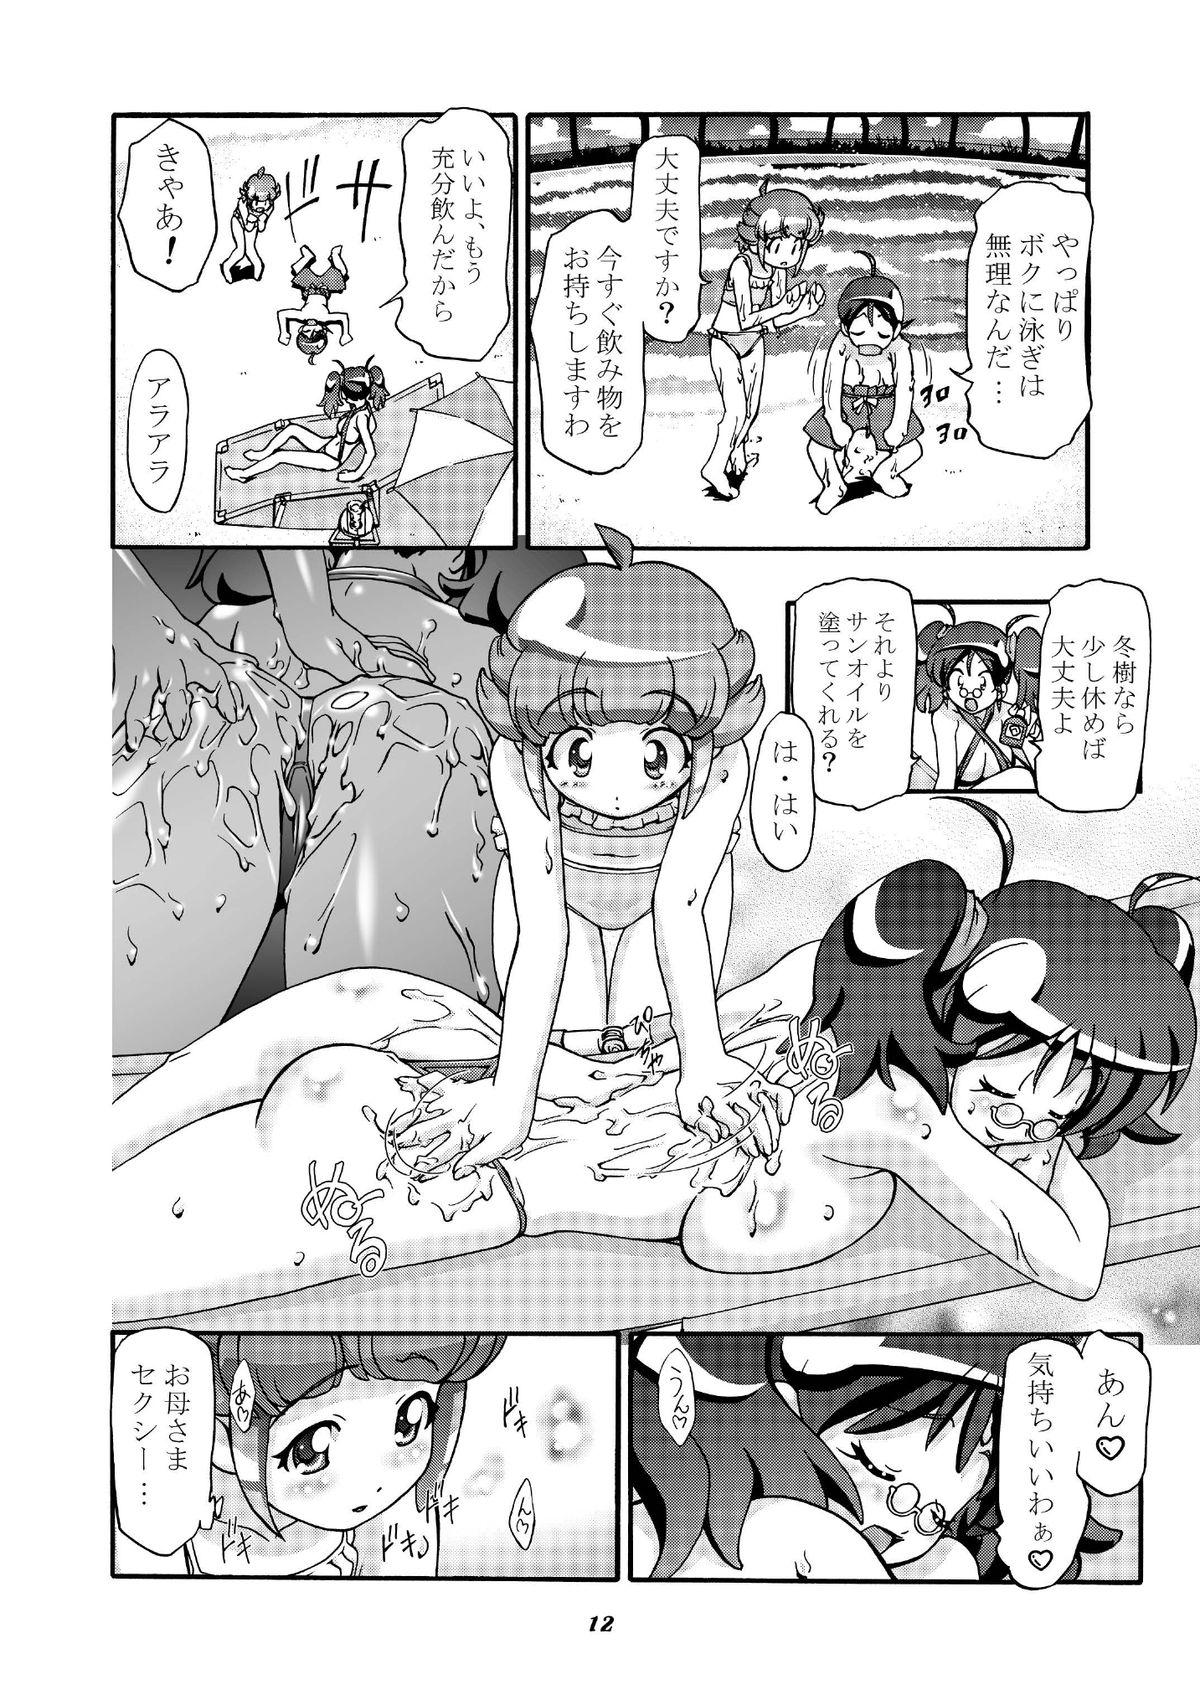 Blow Job Aki Momo - Autumn Peach - Keroro gunsou Tanned - Page 11